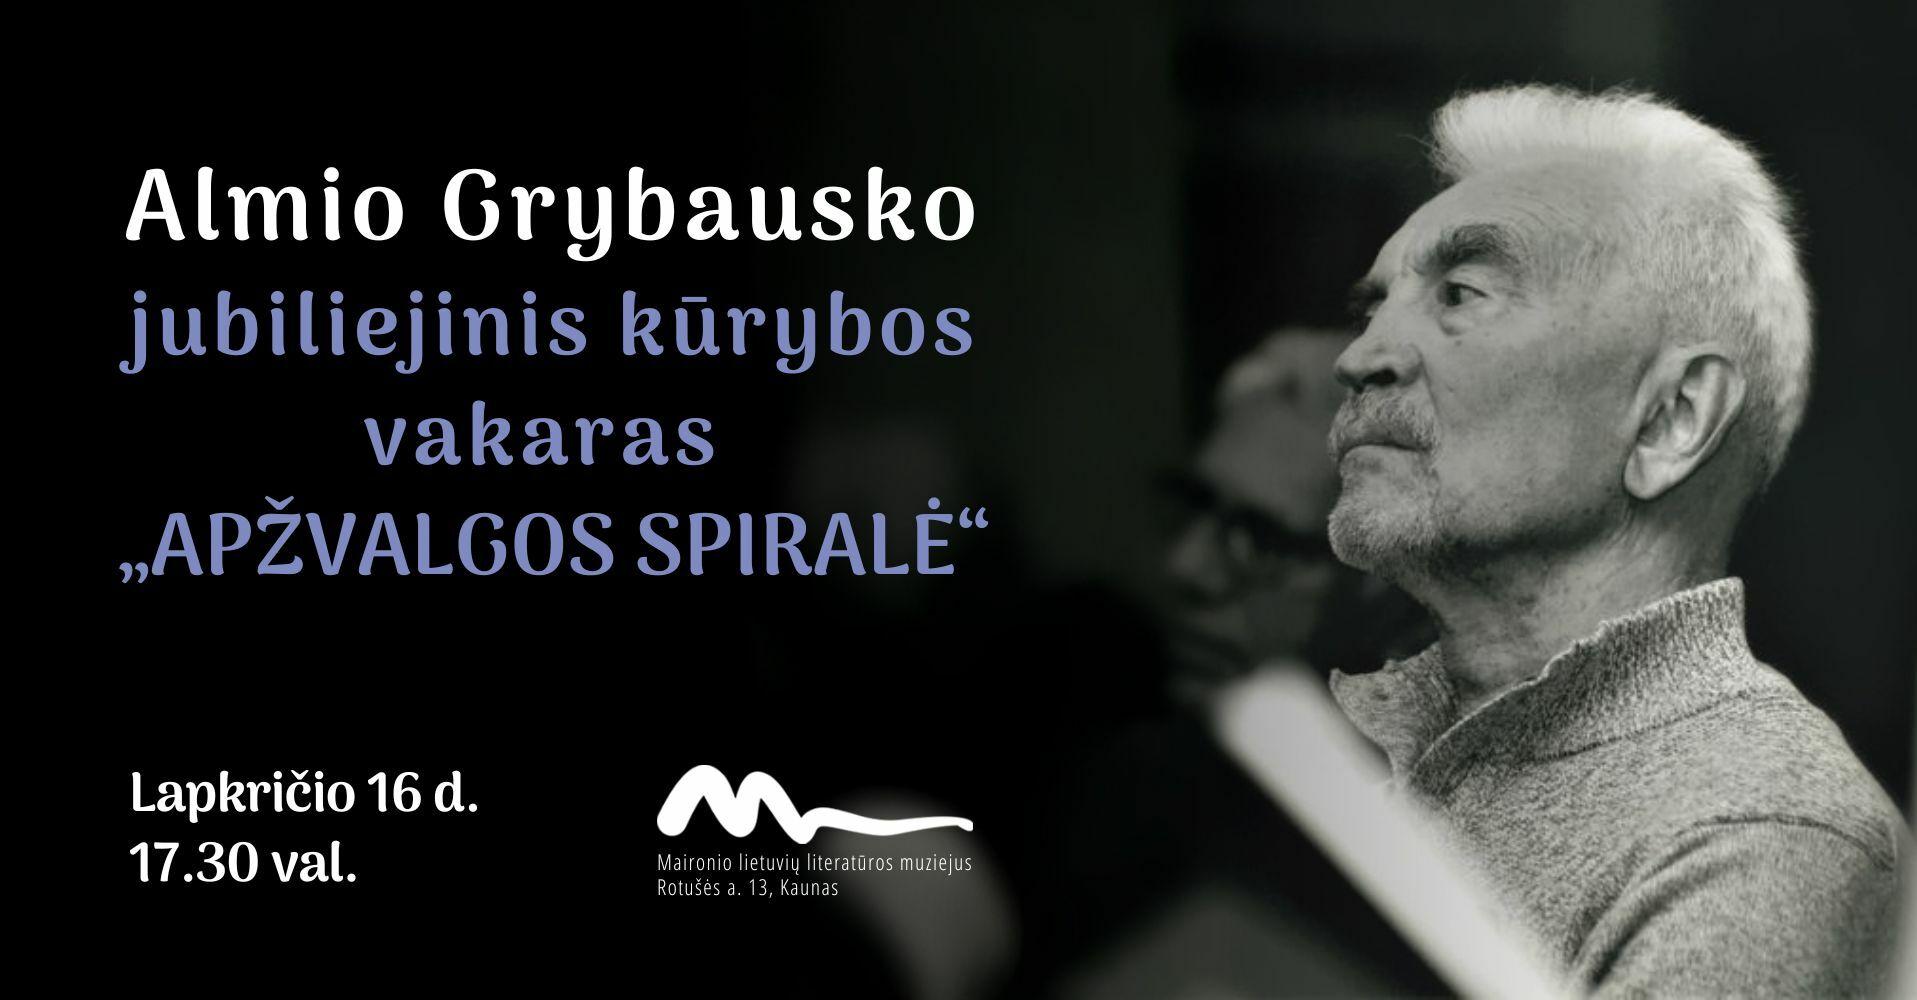 Almio Grybausko jubiliejinis kūrybos vakaras „Apžvalgos spiralė“